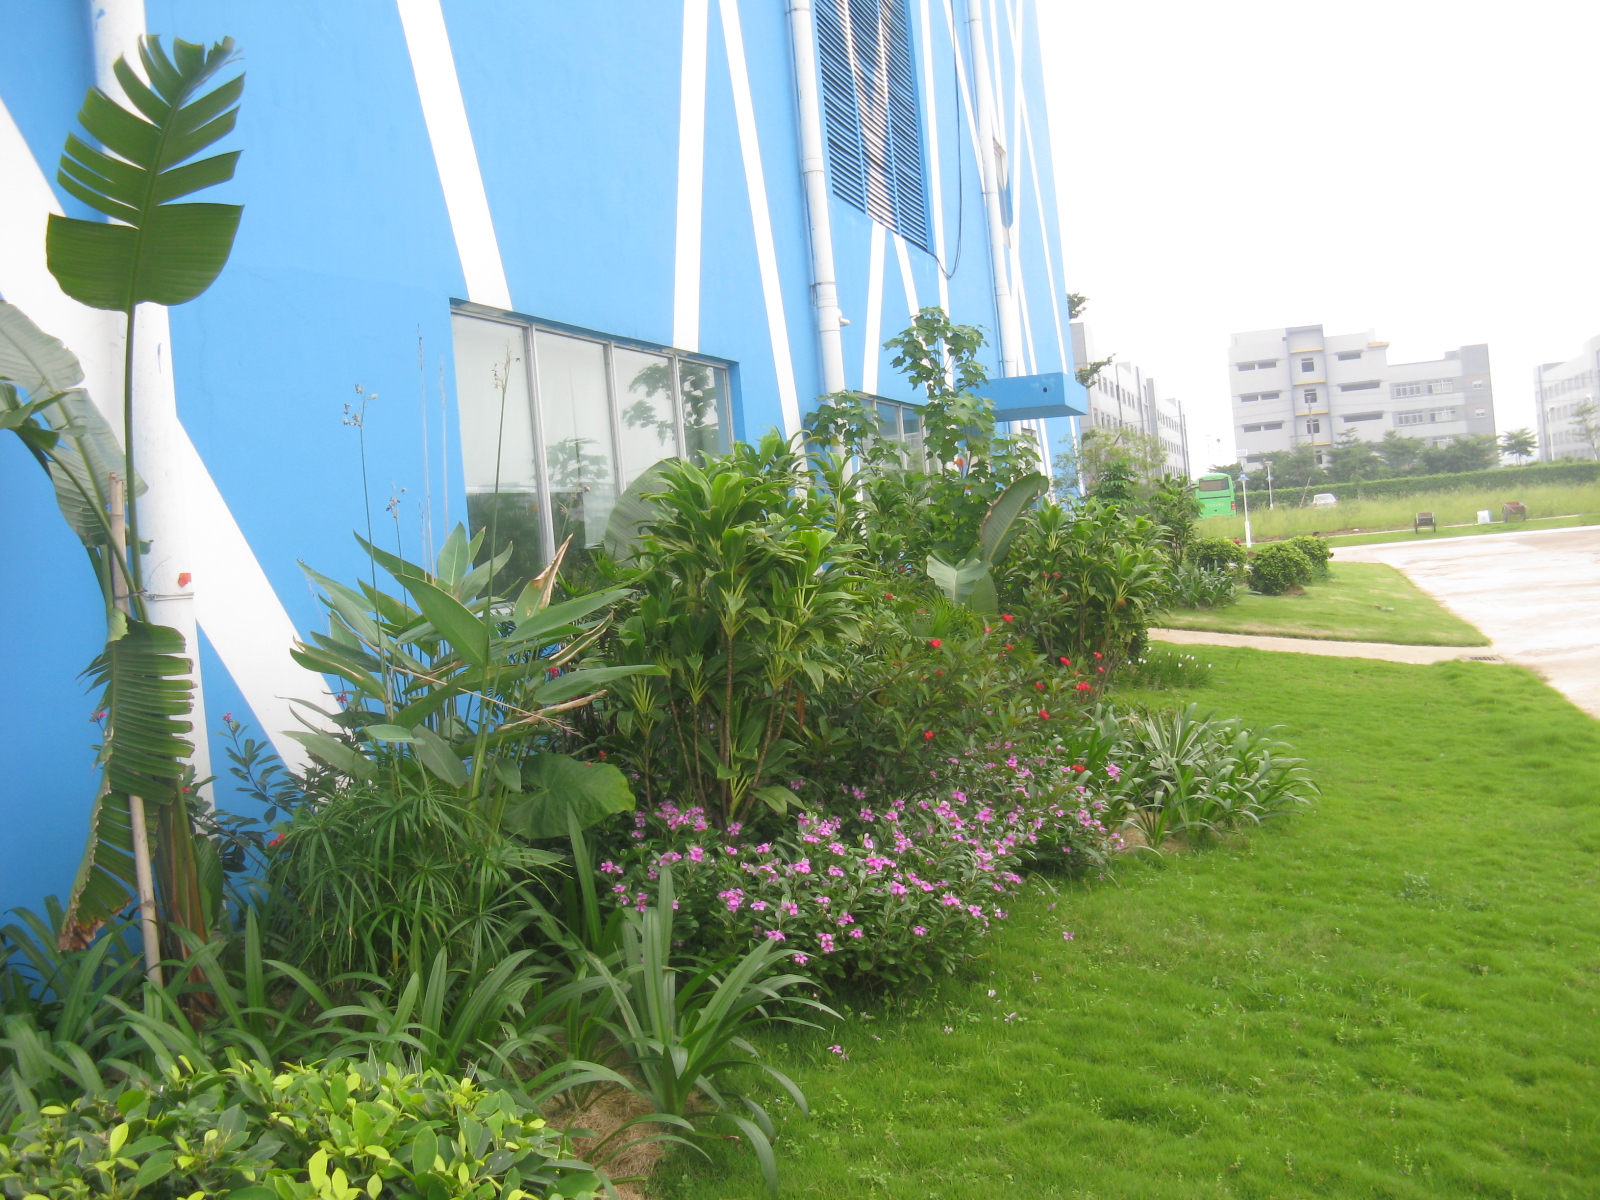 小区 公寓 酒店景观设计 绿化植物种植设计 草坪草的种植及养护 景观设计 植物种植 草坪养护